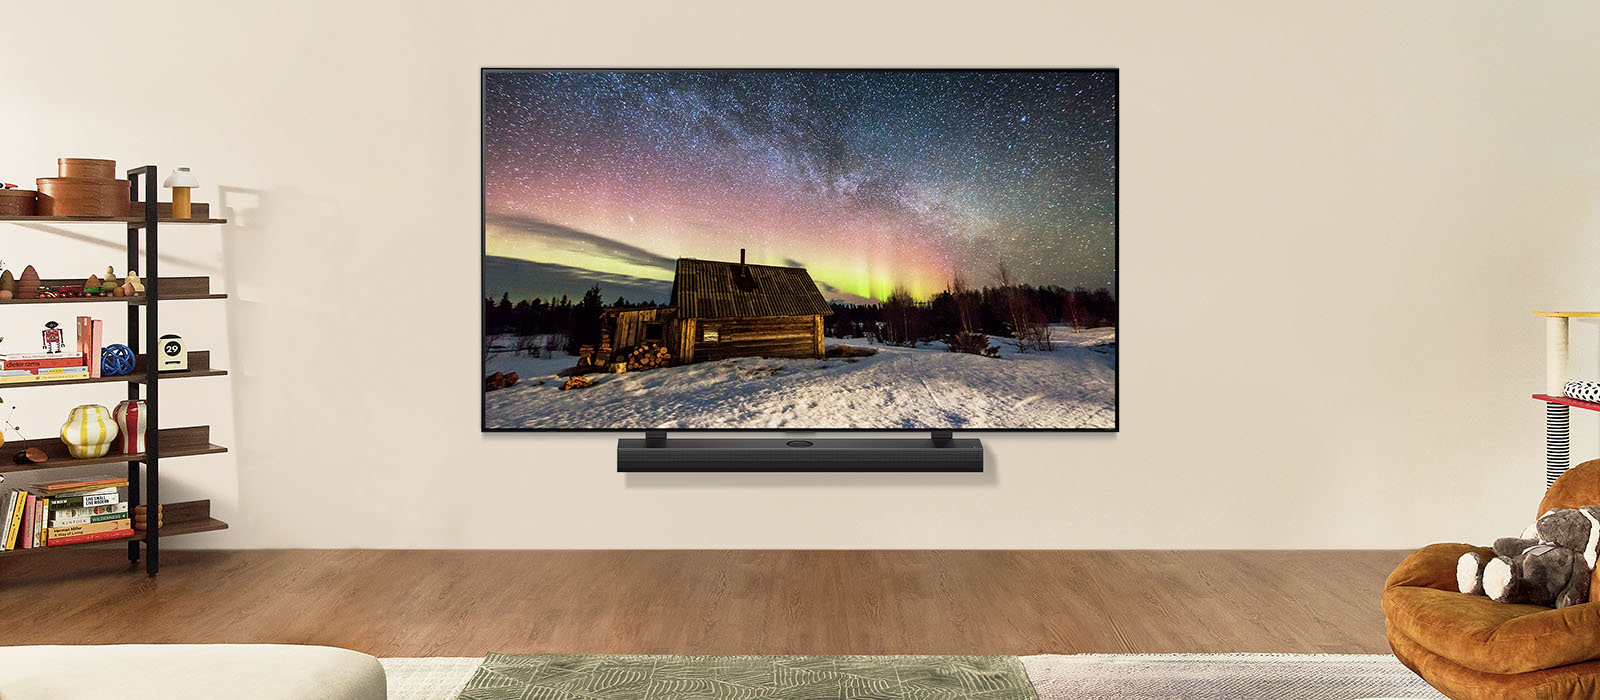 Uma imagem de uma TV e uma Soundbar da LG em um espaço de convivência moderno durante o dia. A imagem de uma aurora boreal é exibida com os níveis ideais de brilho.